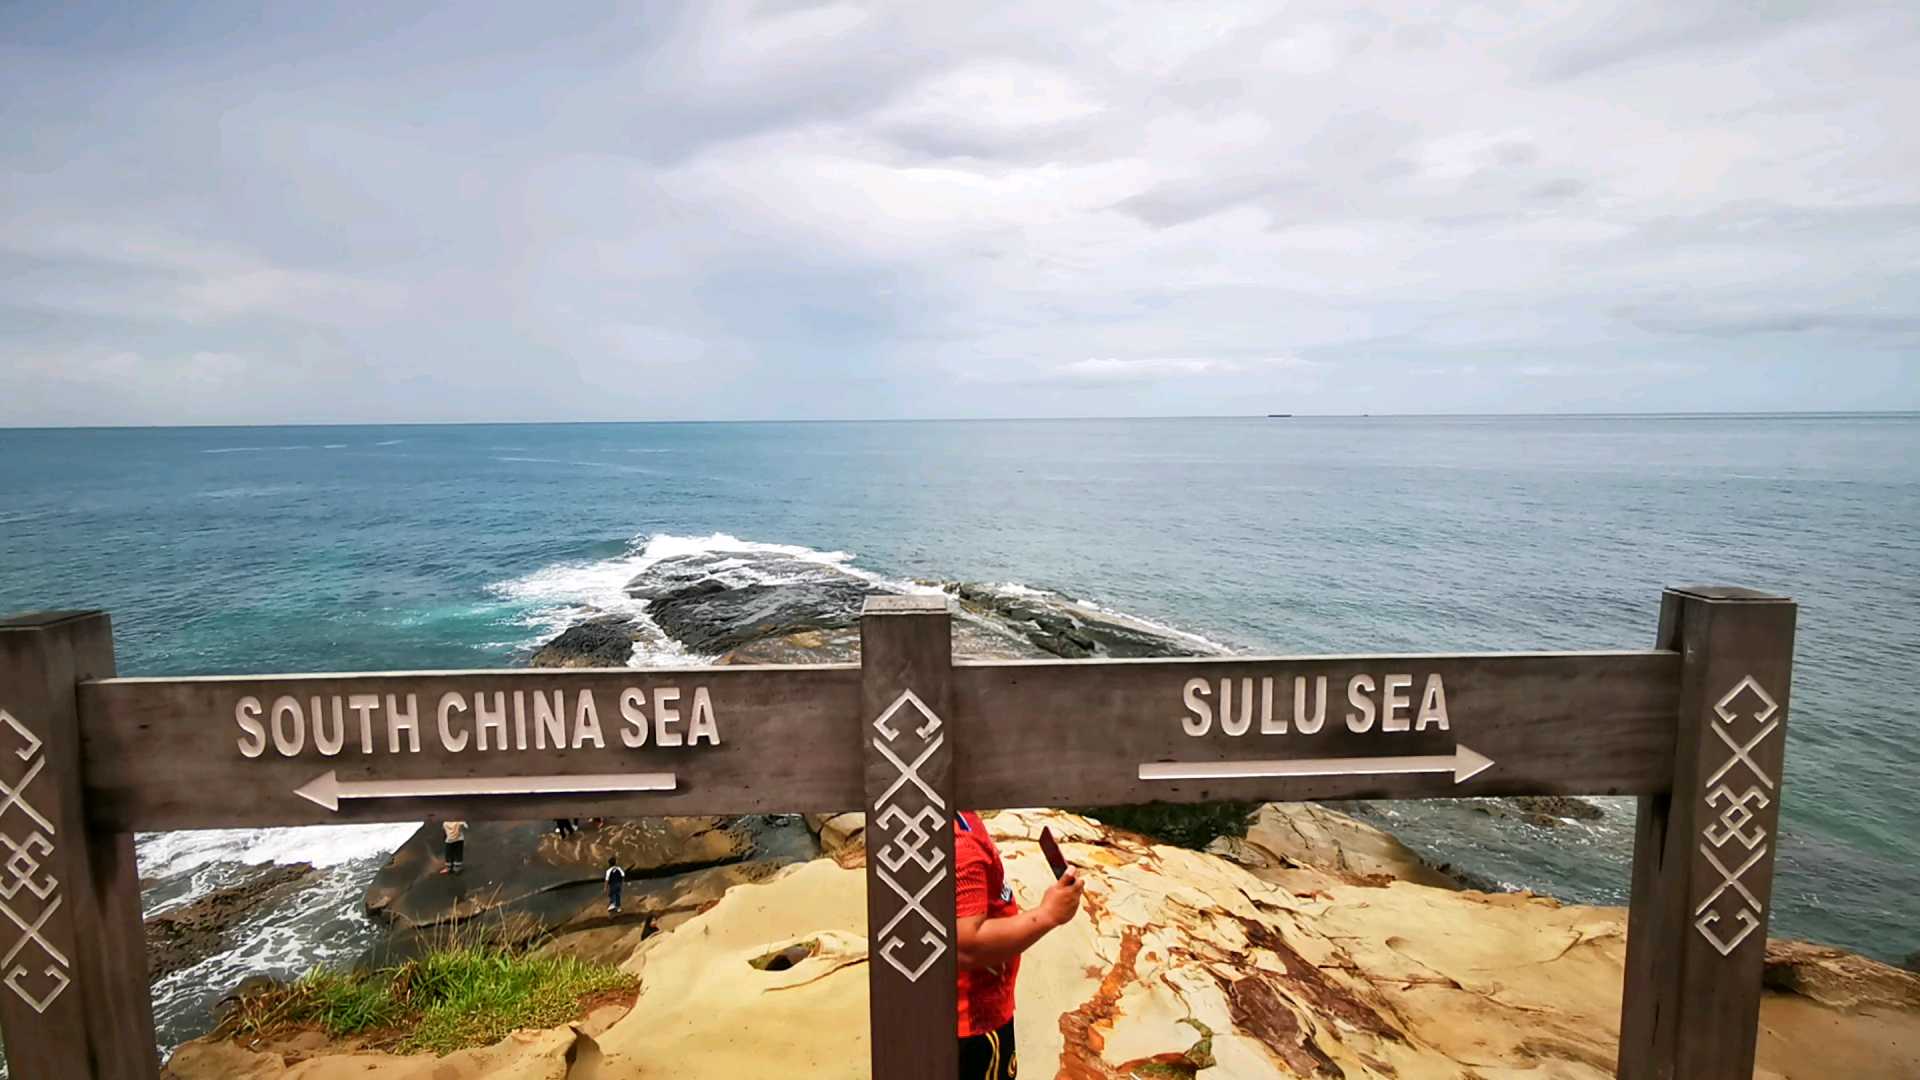 古达天涯海角, 沙巴州地图 狗头耳朵最顶端， 见证把南中国海和苏禄海的边界， 左边就是南中国海右边就